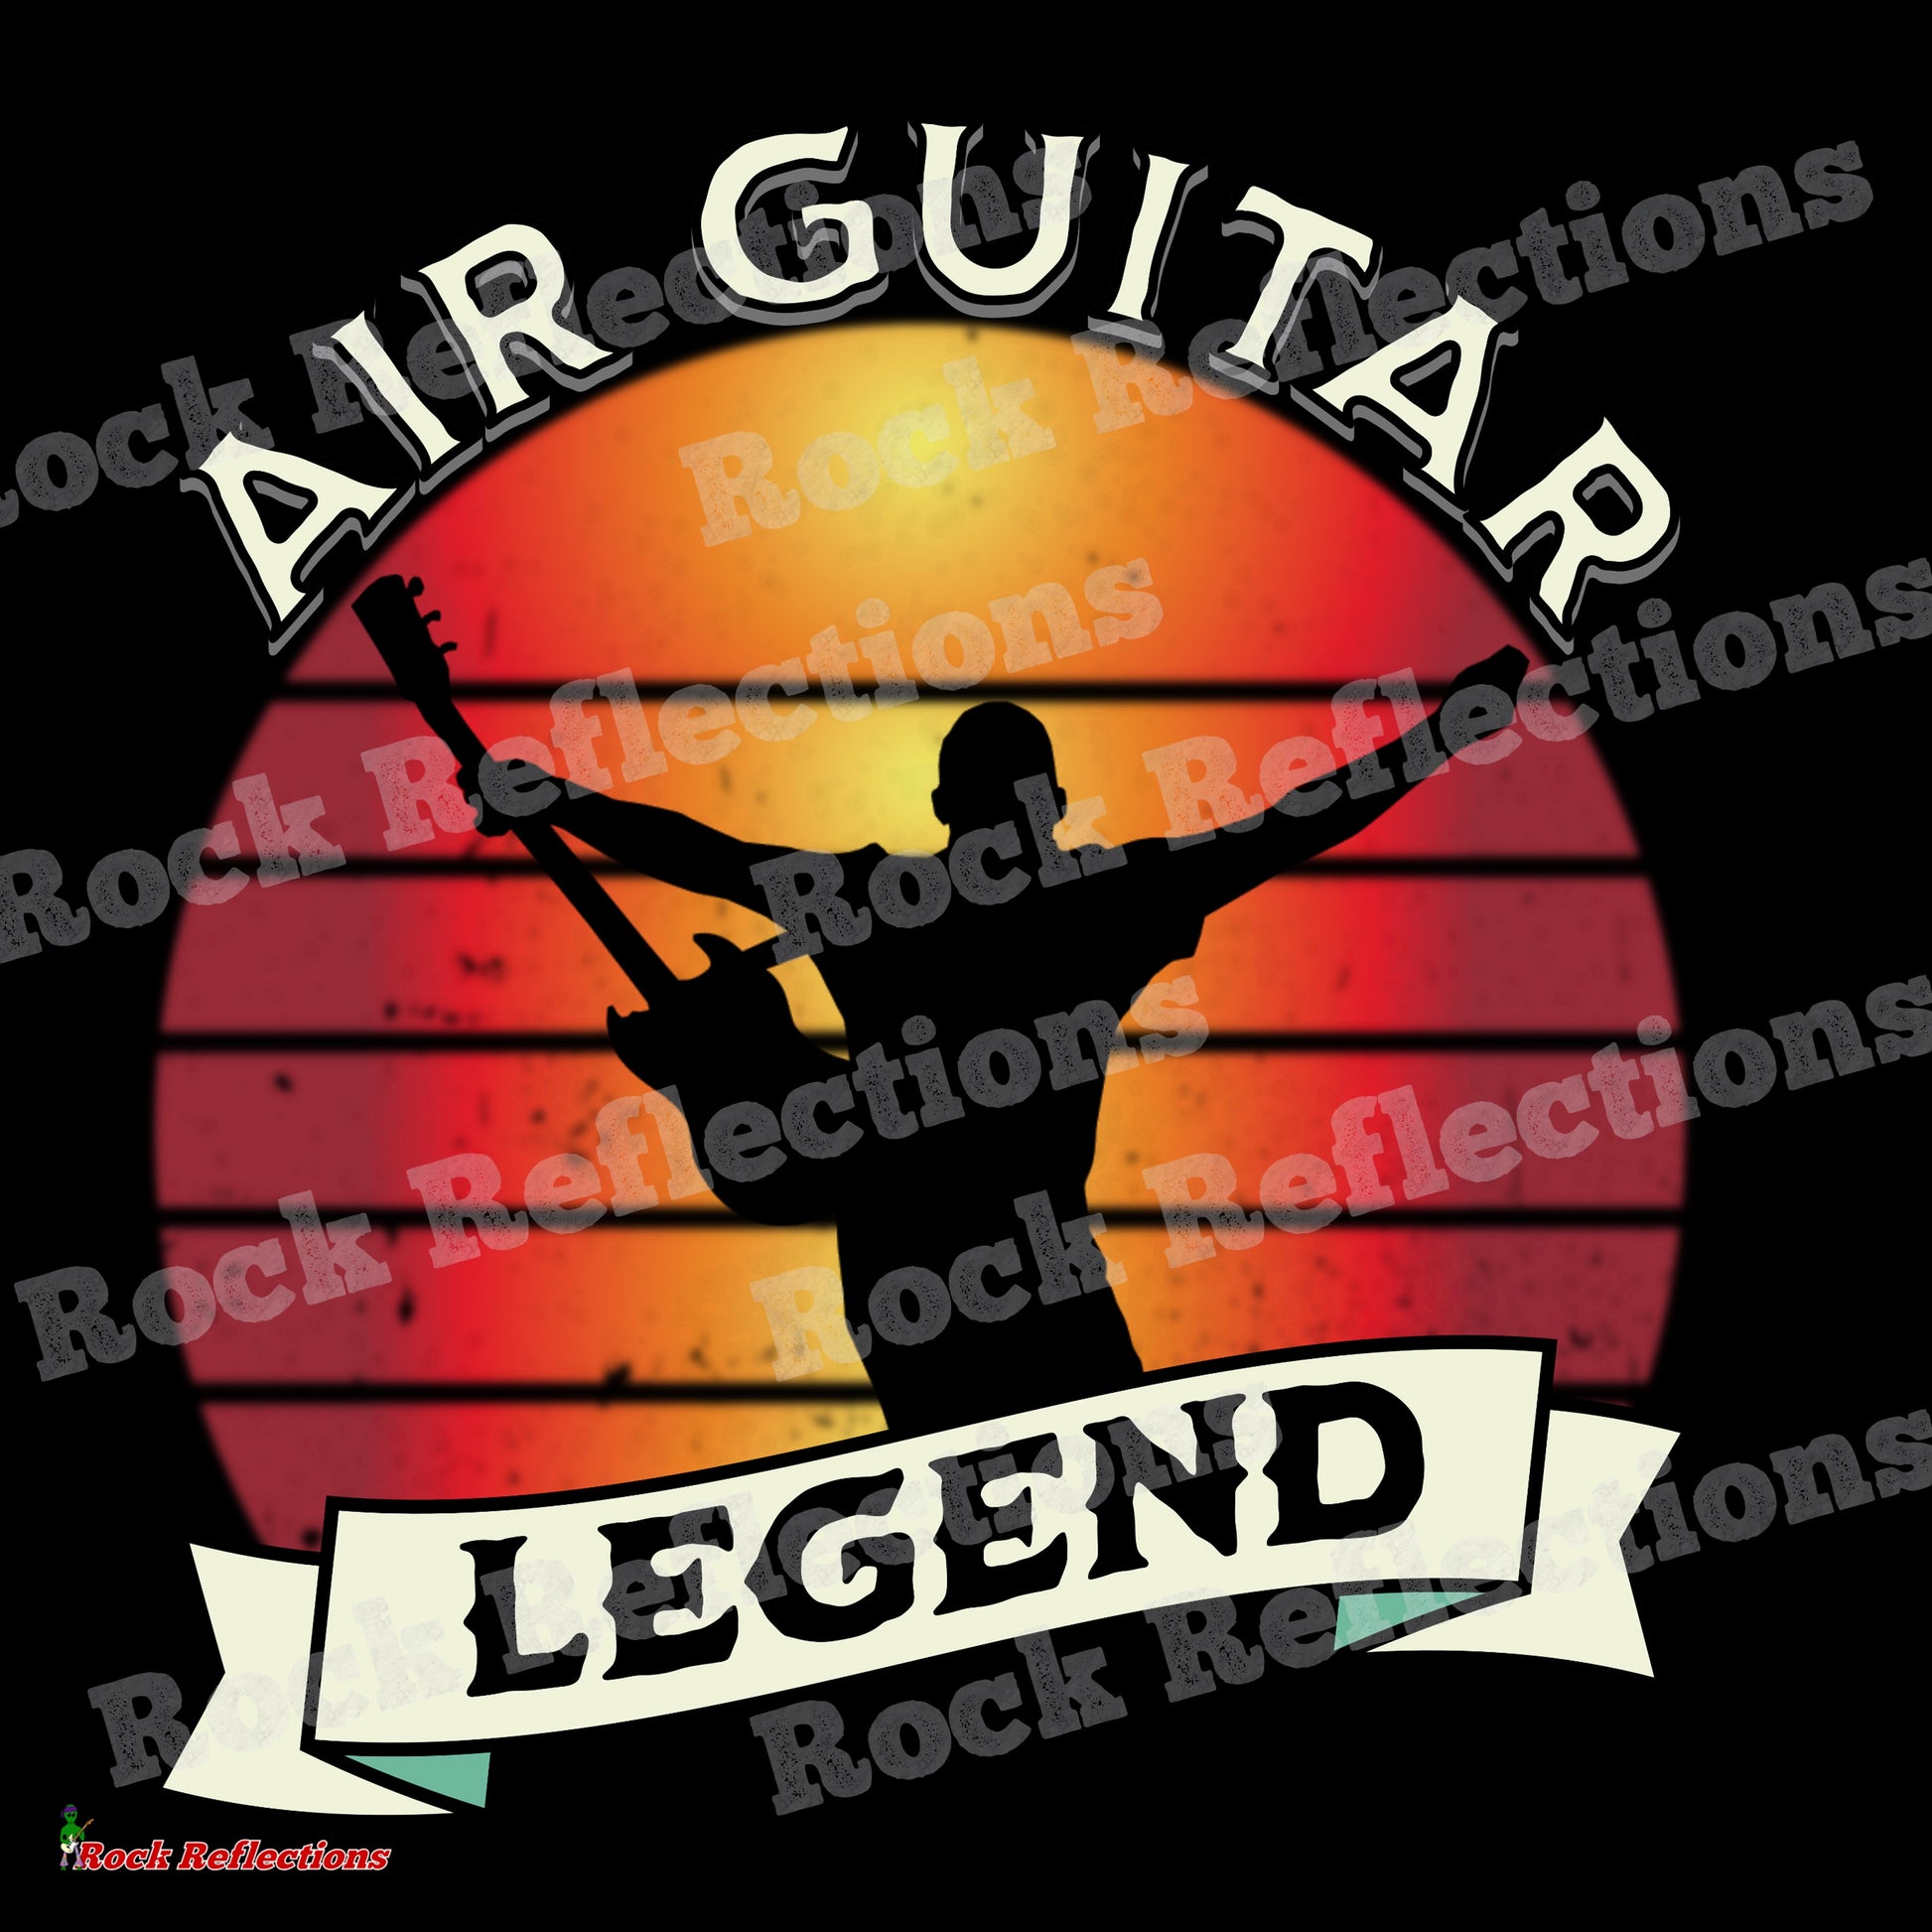 Air Guitar Legend T-Shirt SPOD